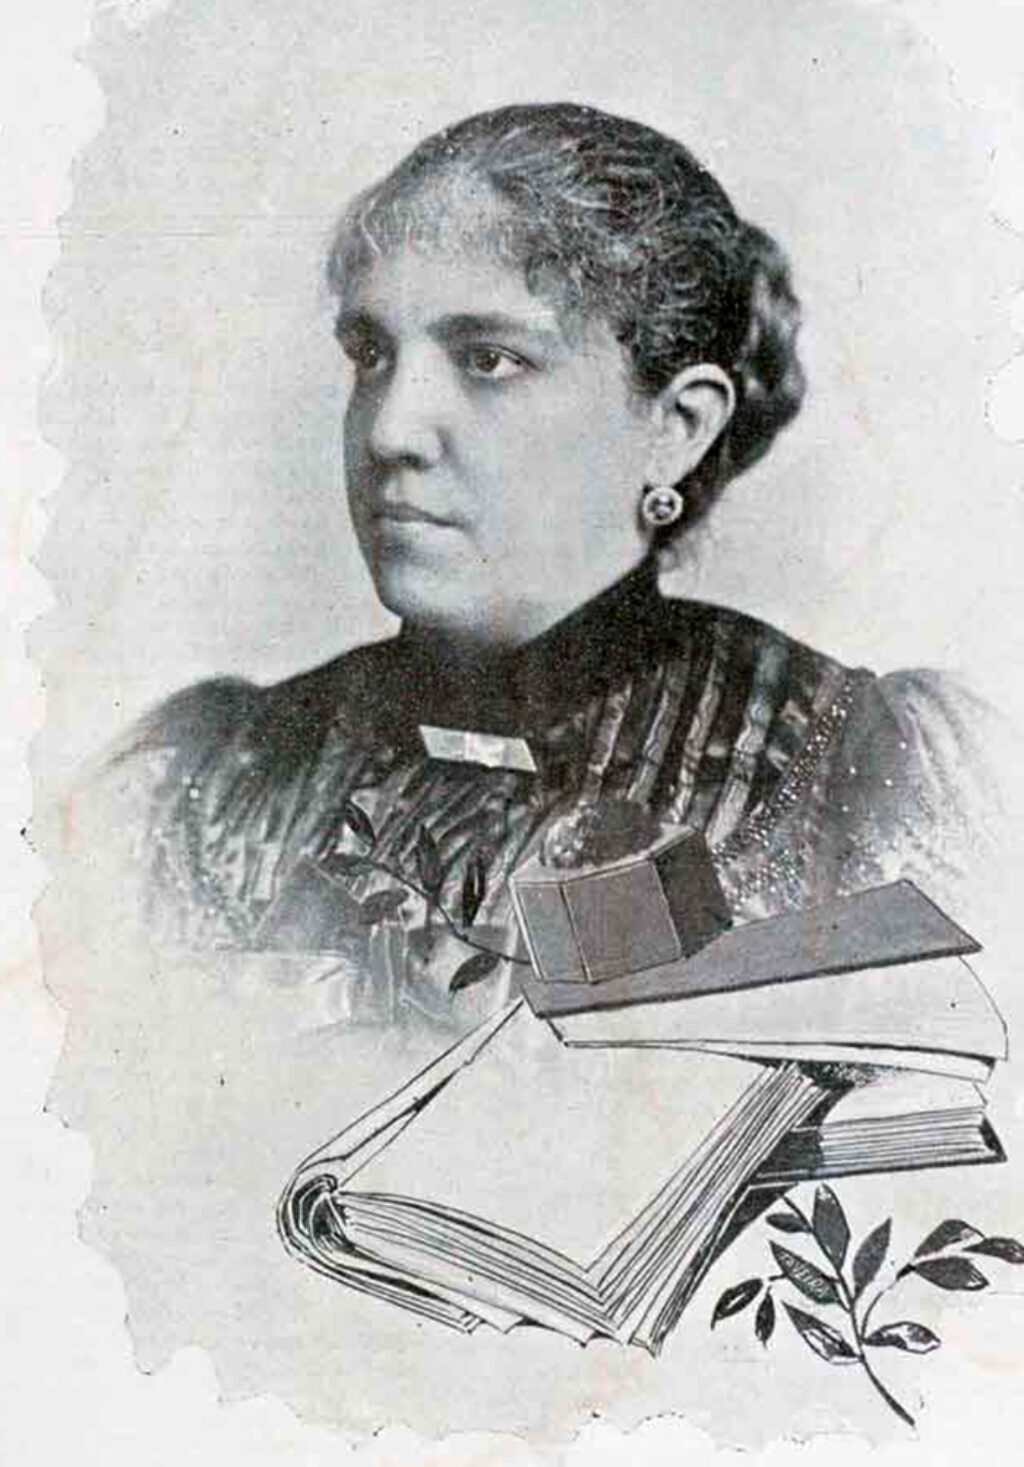 María Luisa Dolz y Arango (La Habana, 1854-1928), maestra y feminista cubana.